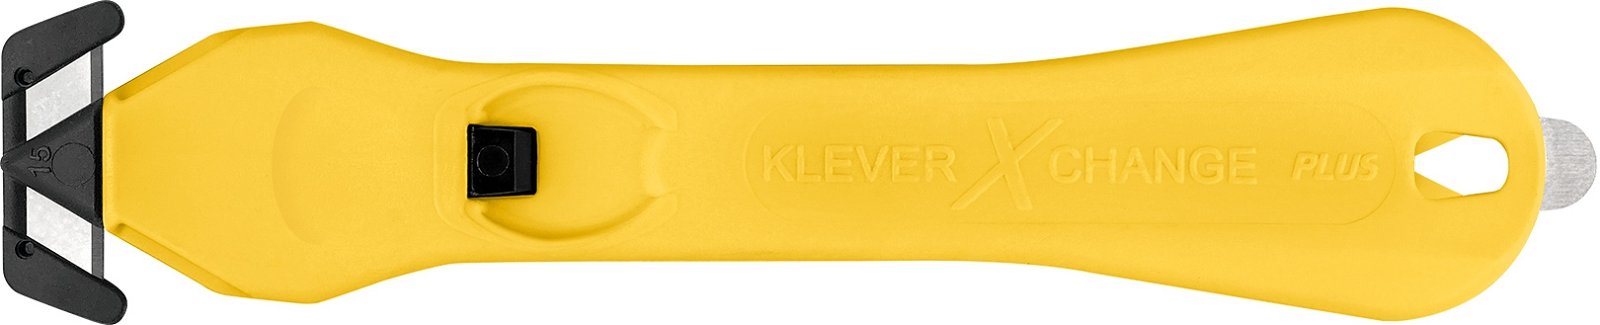 Klever® Sicherheitsmesser KLEVER XCHANGE PLUS 20, orange